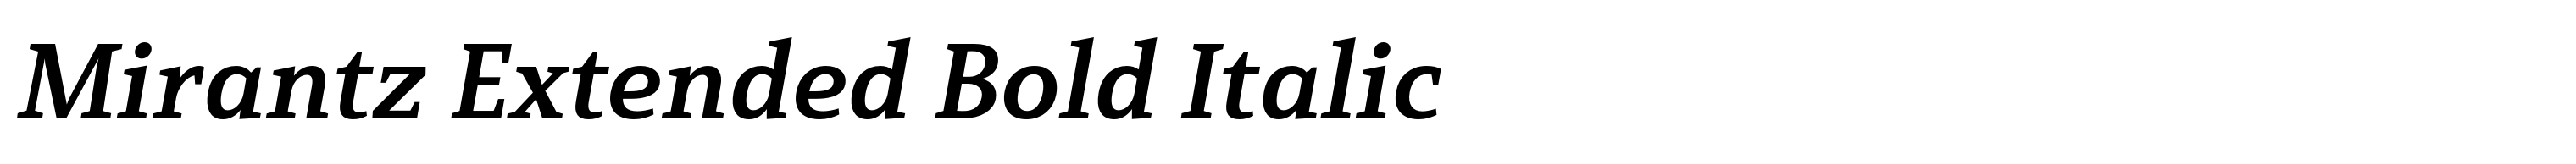 Mirantz Extended Bold Italic